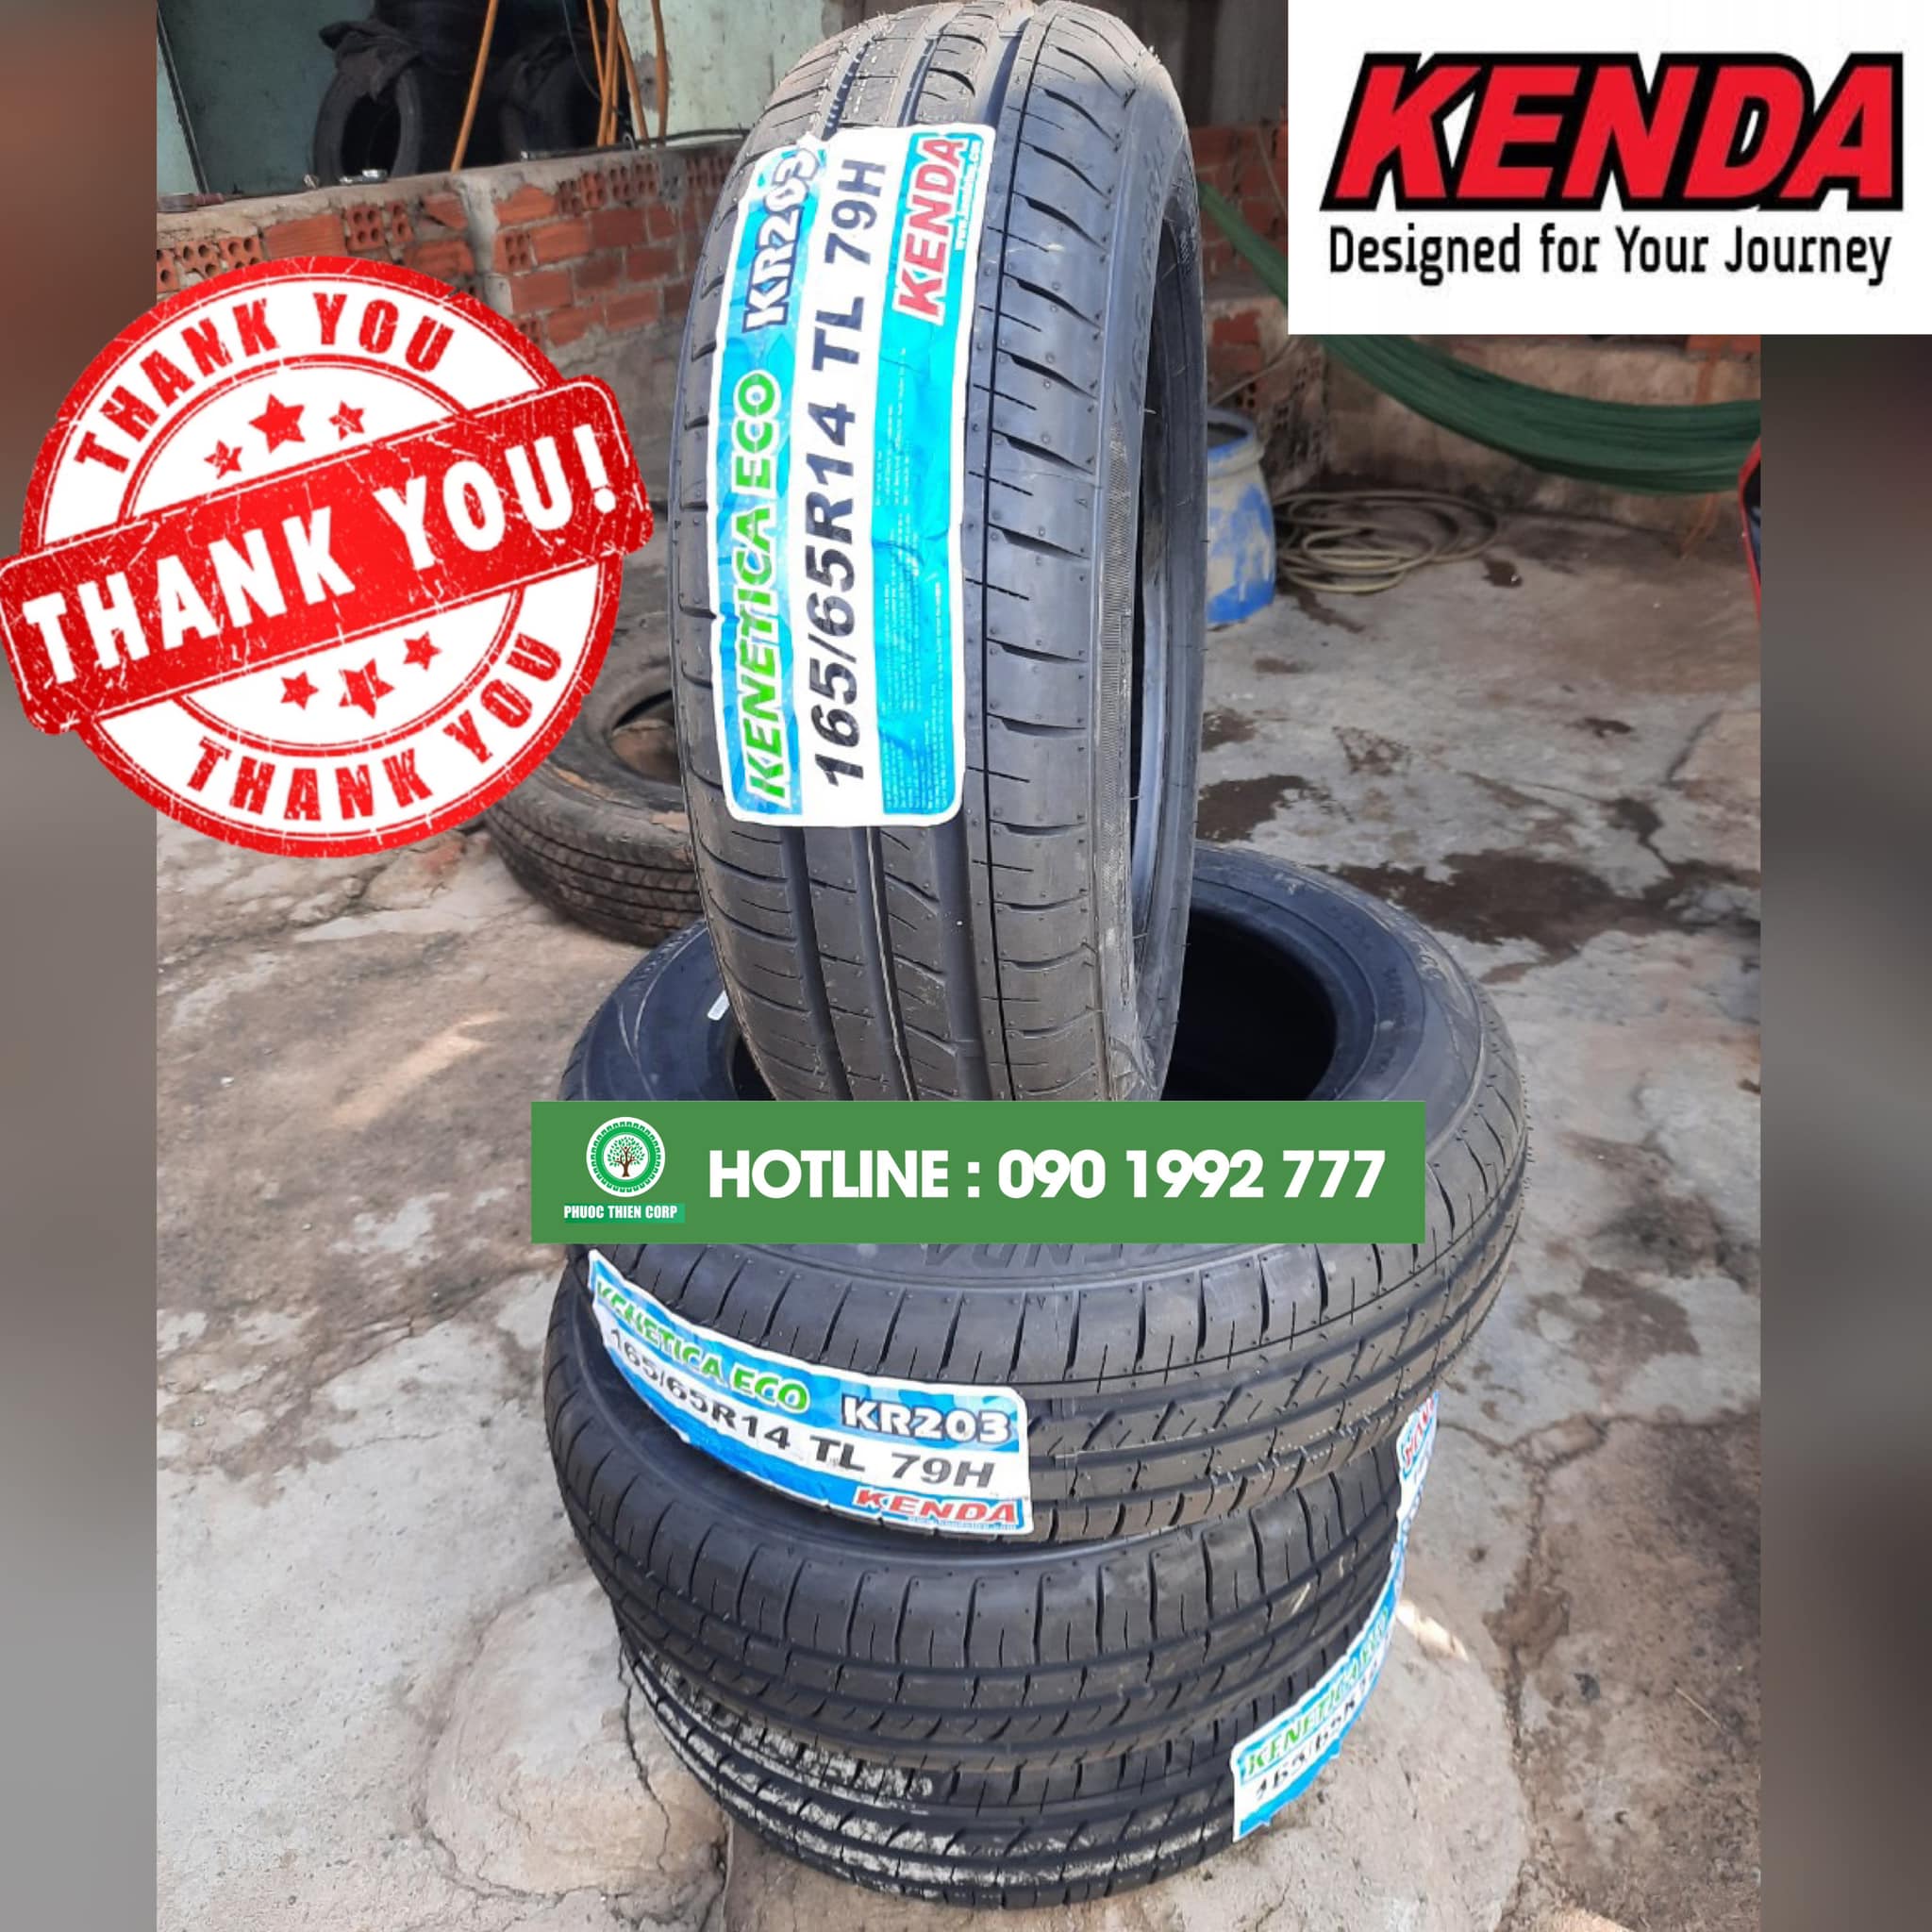 Gợi ý : Thay lốp KENDA (Hàng xuất khẩu) cho xe Hyundai Getz.